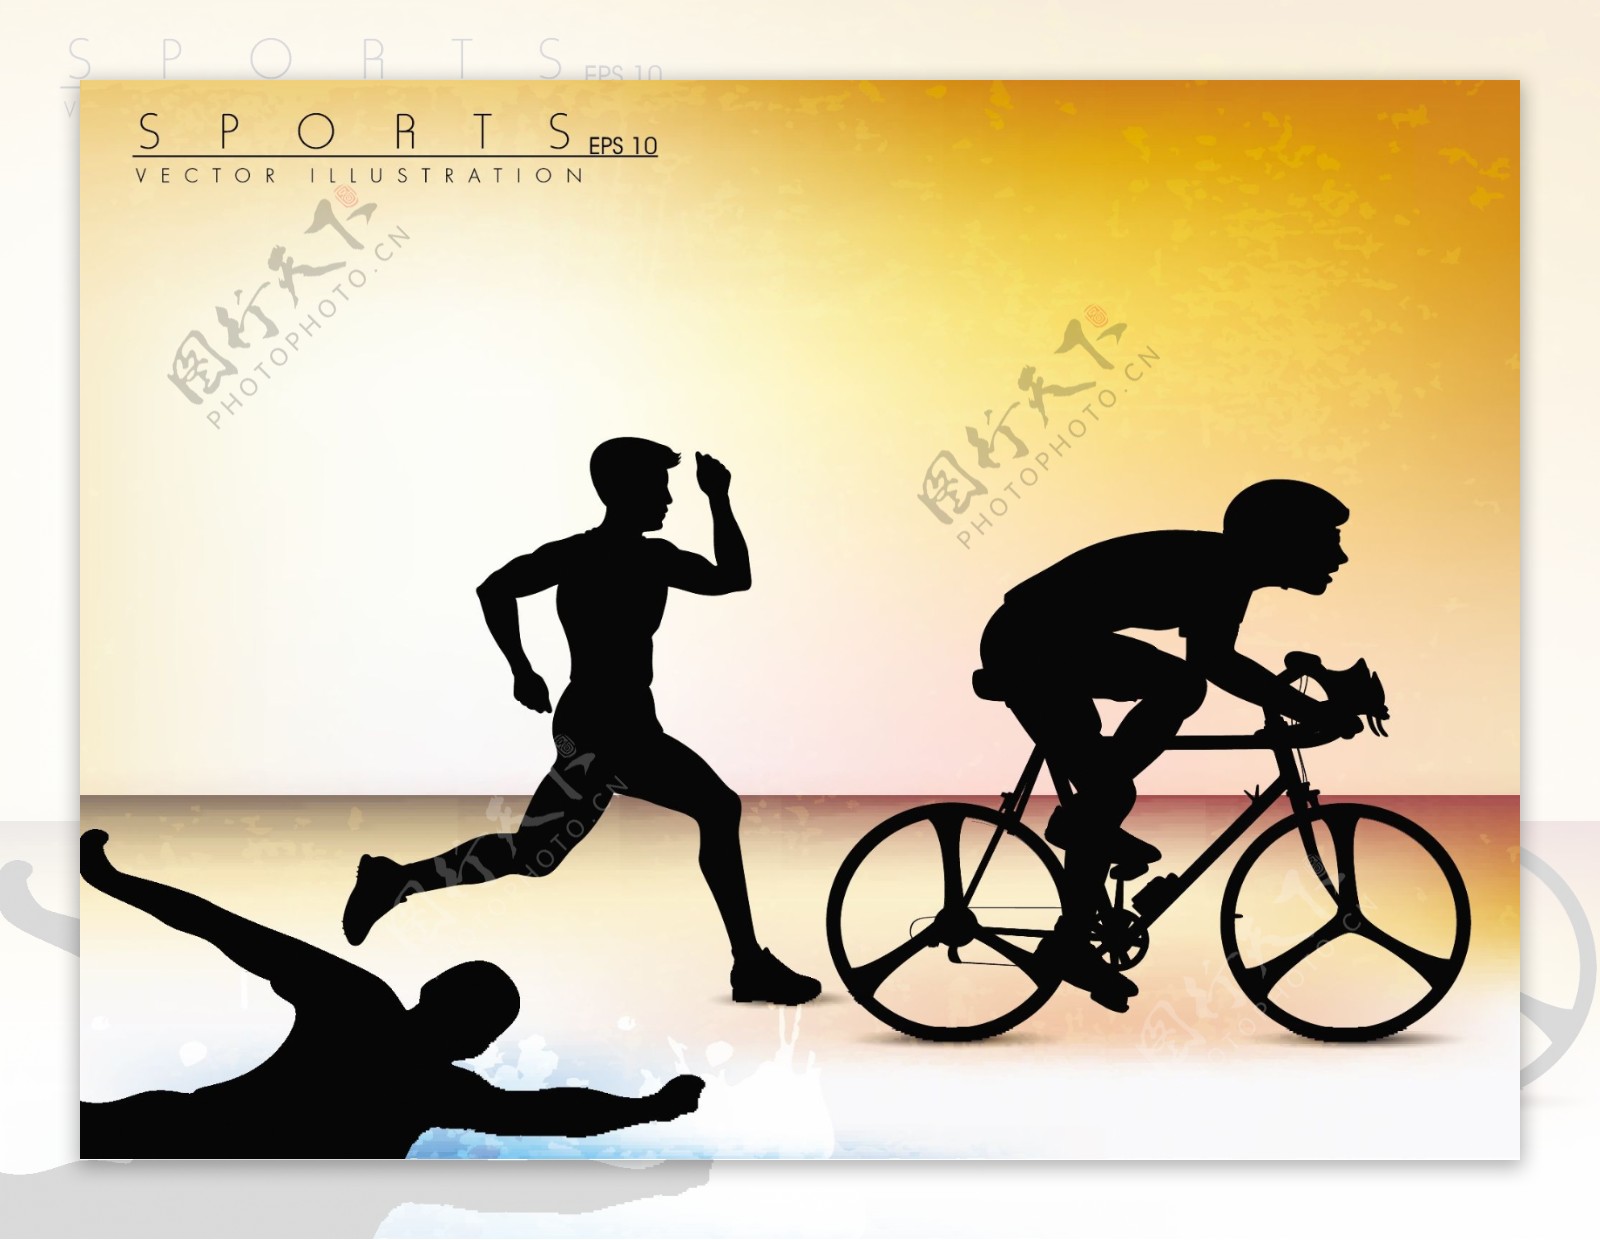 矢量插图展示奥林匹克铁人三项运动员开始显示进展